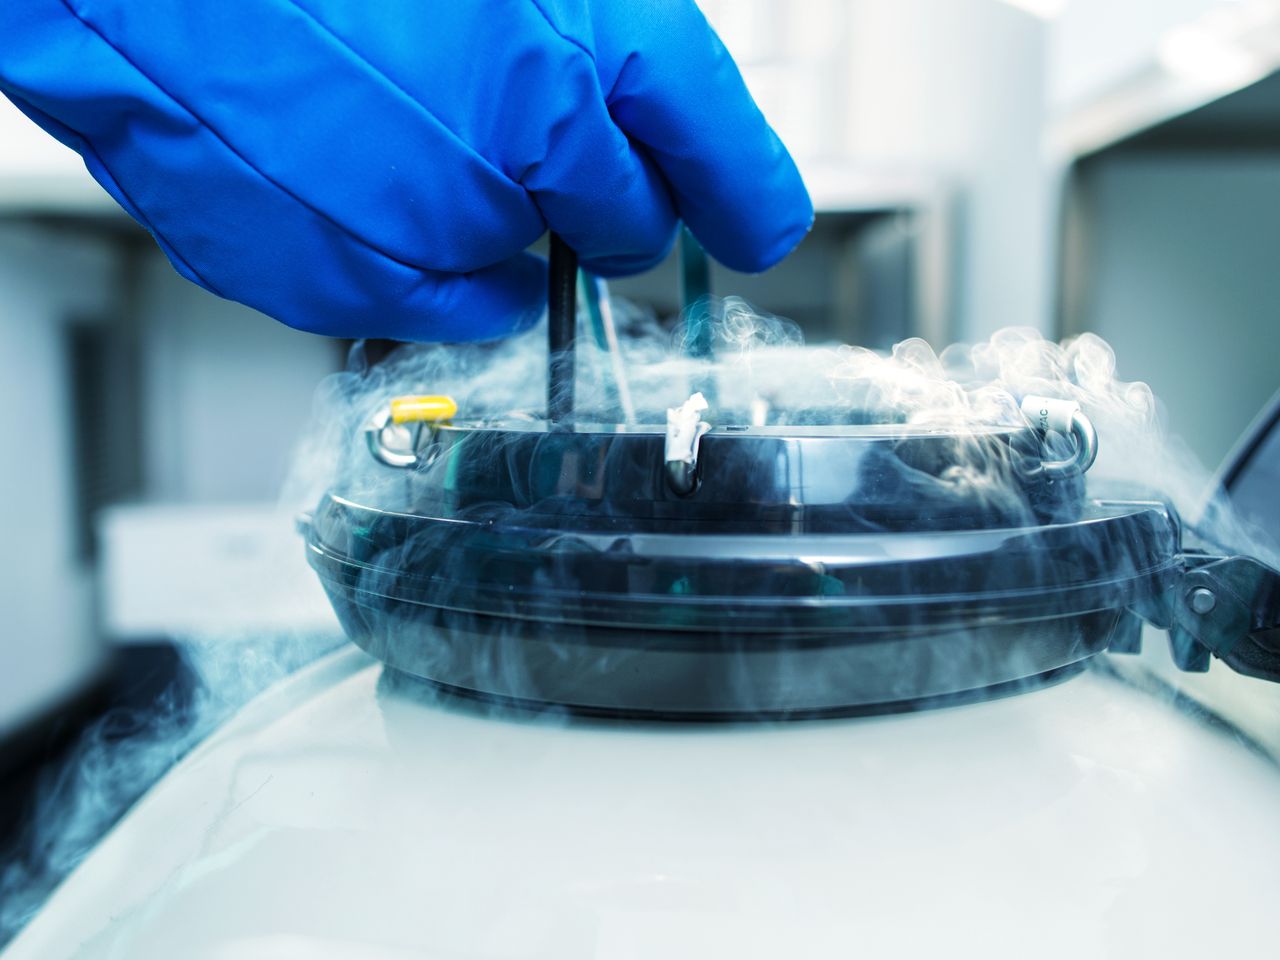 Australia's first cryonics patient frozen in a groundbreaking procedure